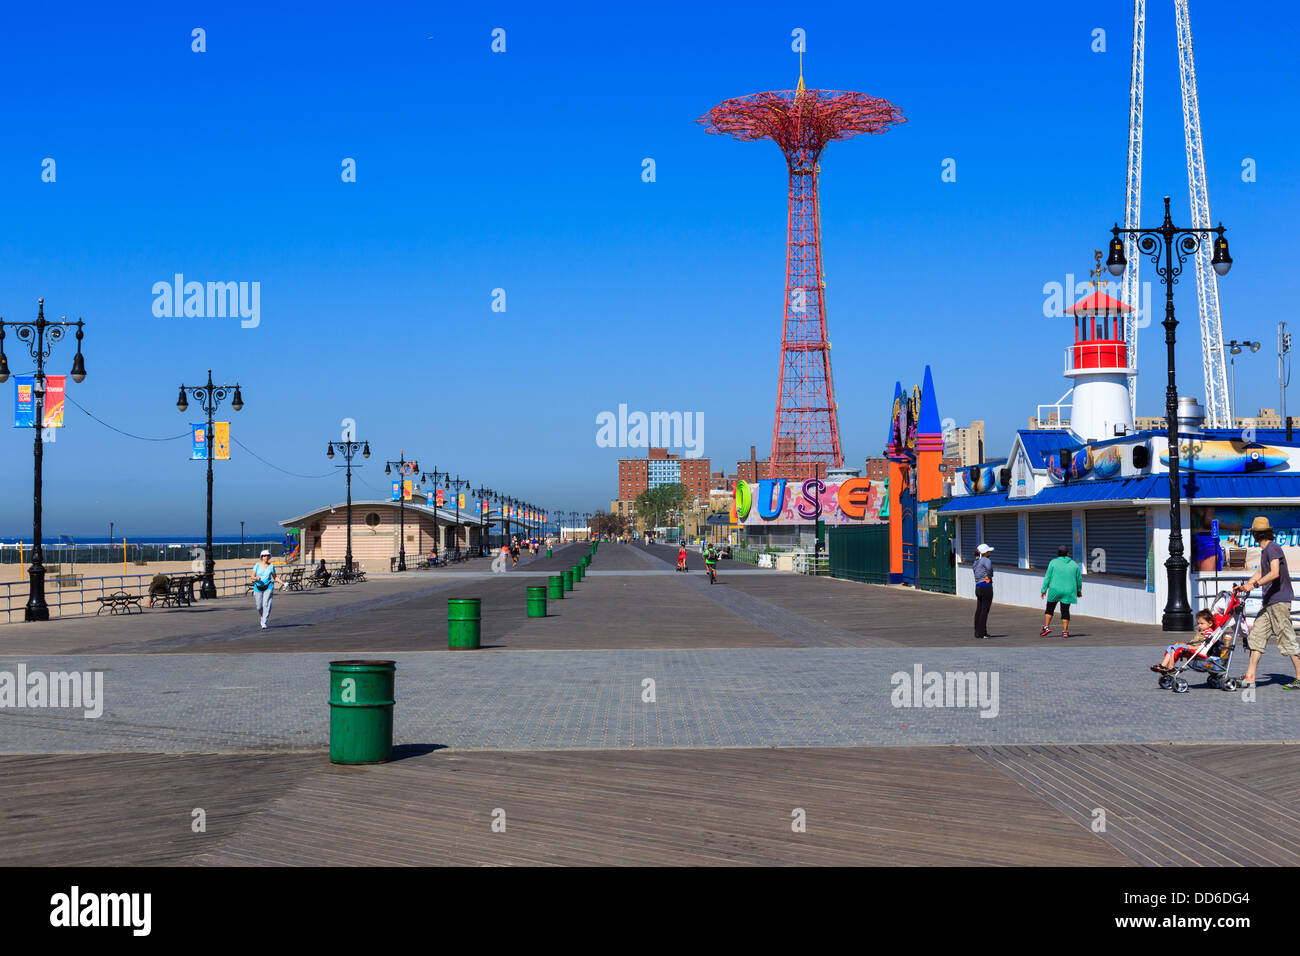 Una fotografía de Coney Island en Brooklyn, Nueva York. La ciudad de Nueva York. Rodado en un día muy caliente y claro sin nubes en el cielo en 2013. Foto de stock